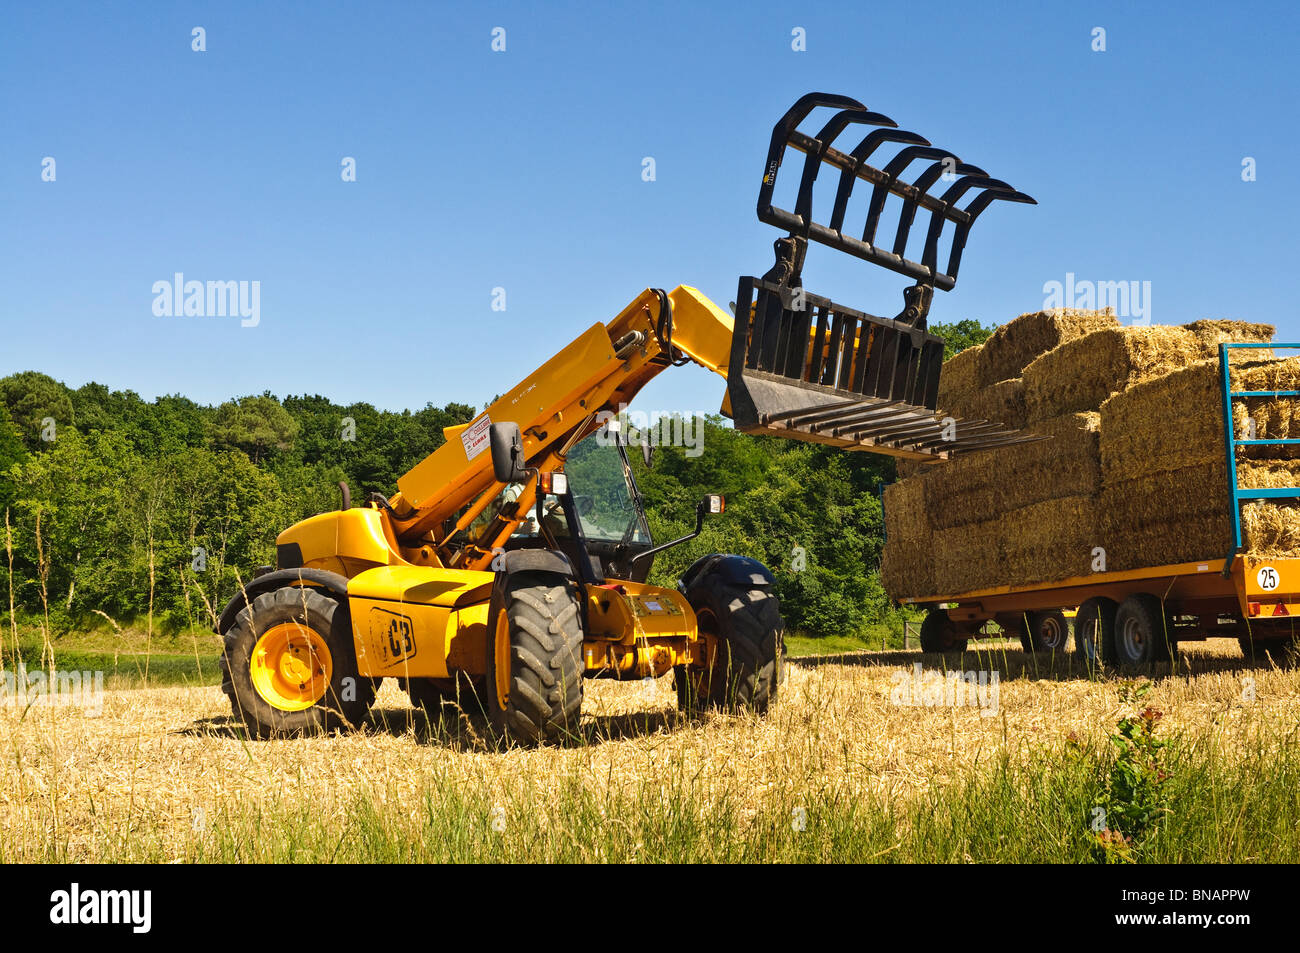 JCB 531-70 Agri télescopique agricole - France. Banque D'Images